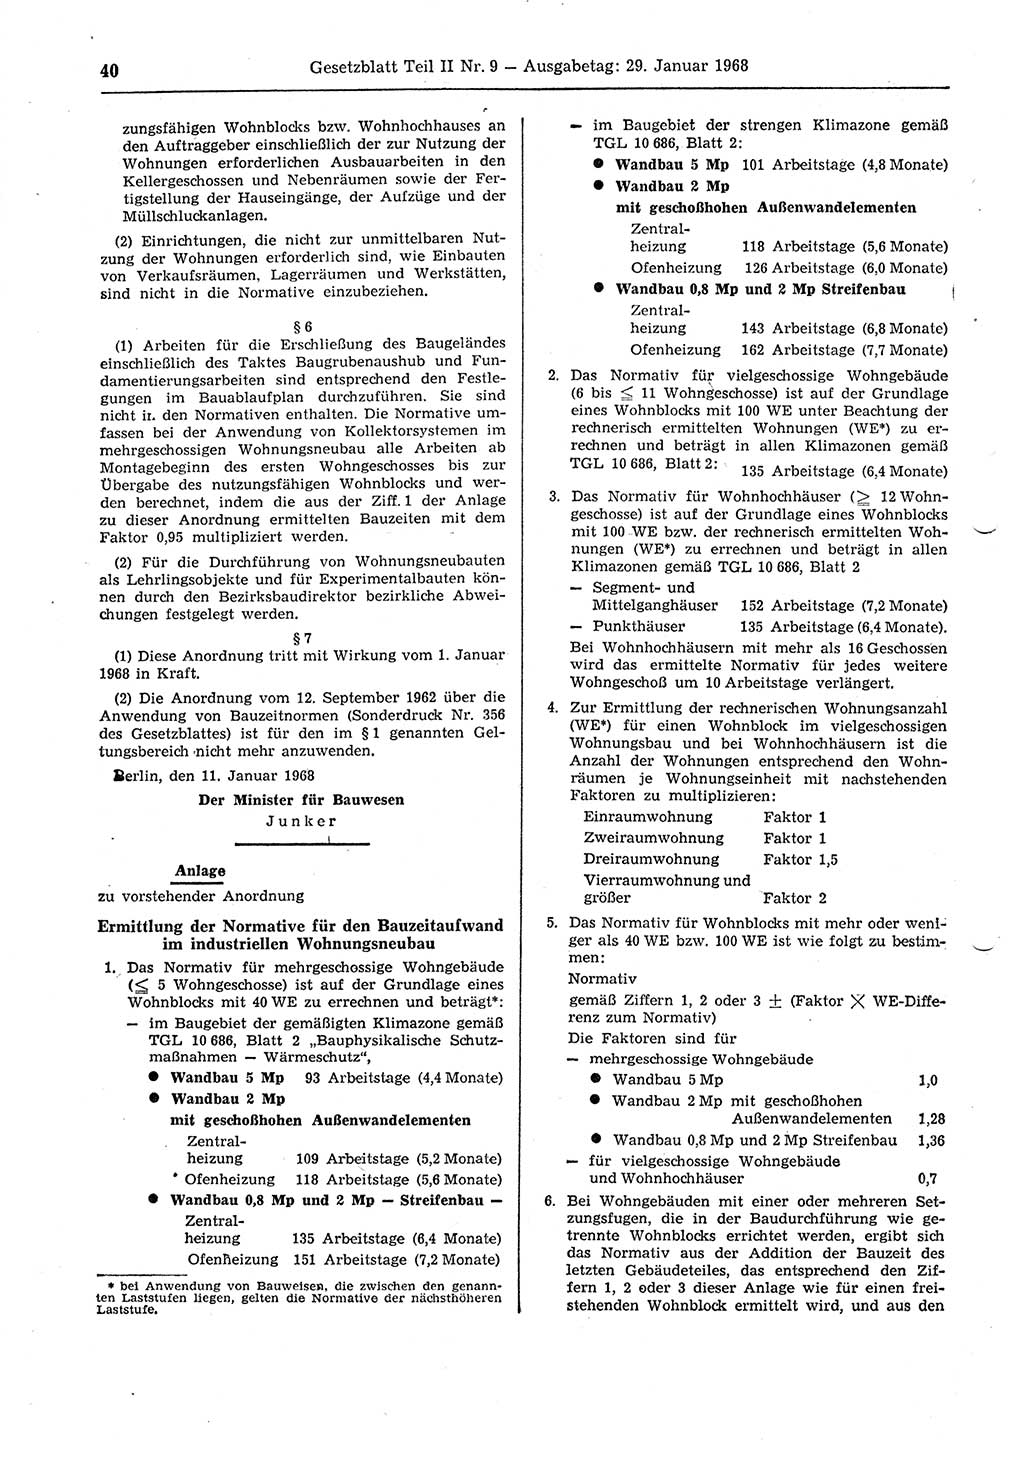 Gesetzblatt (GBl.) der Deutschen Demokratischen Republik (DDR) Teil ⅠⅠ 1968, Seite 40 (GBl. DDR ⅠⅠ 1968, S. 40)